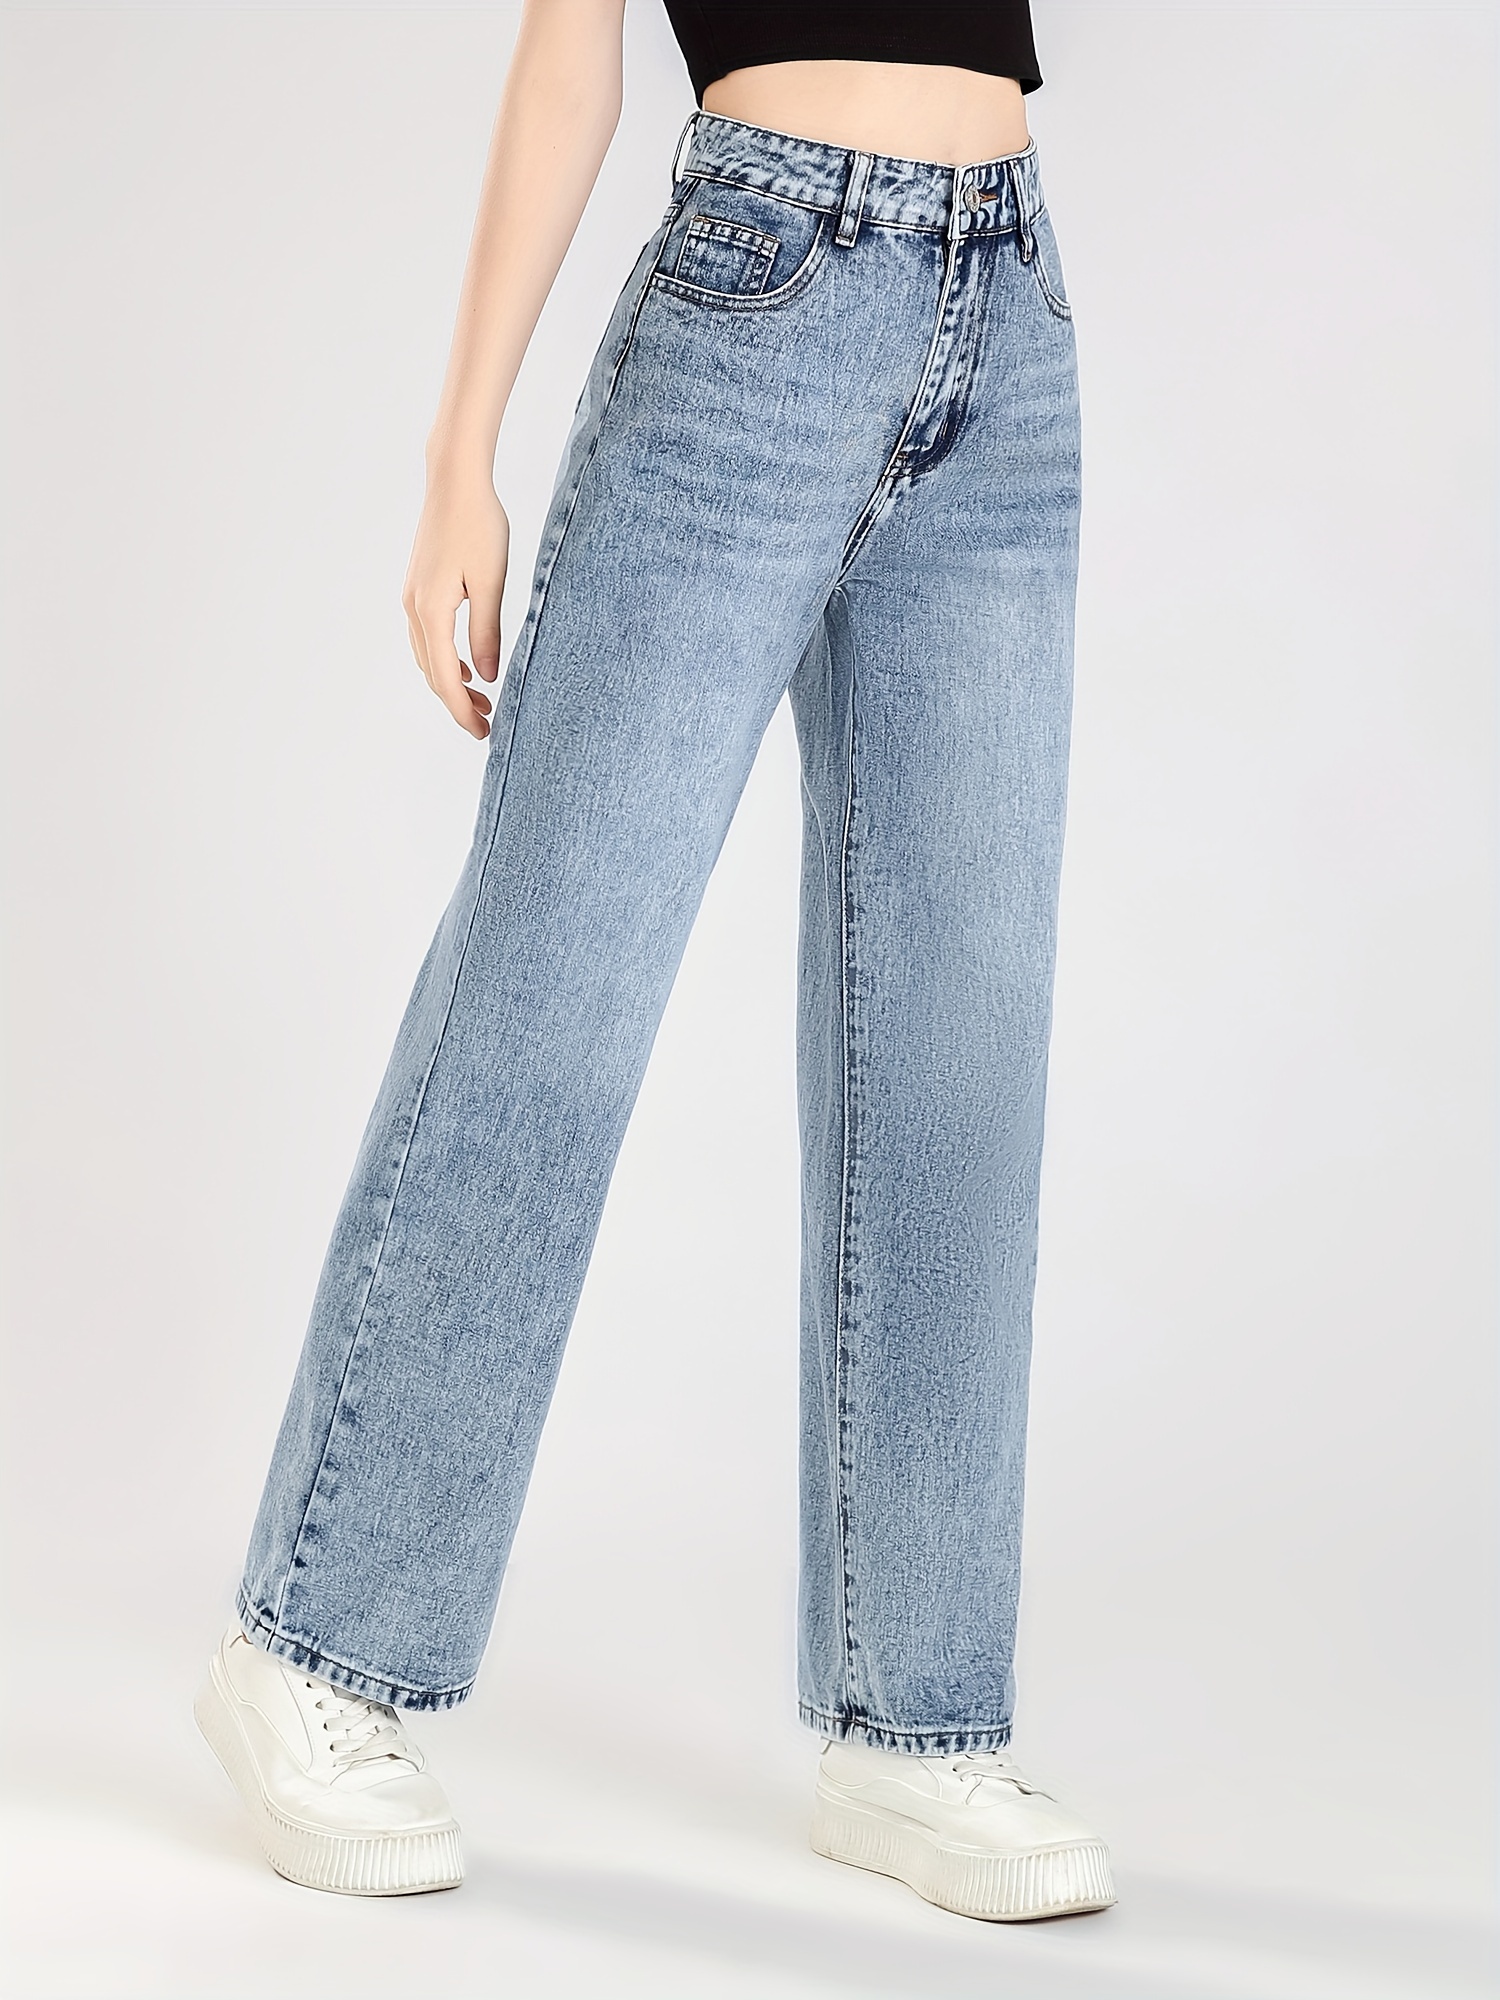 Tween Girls Jeans